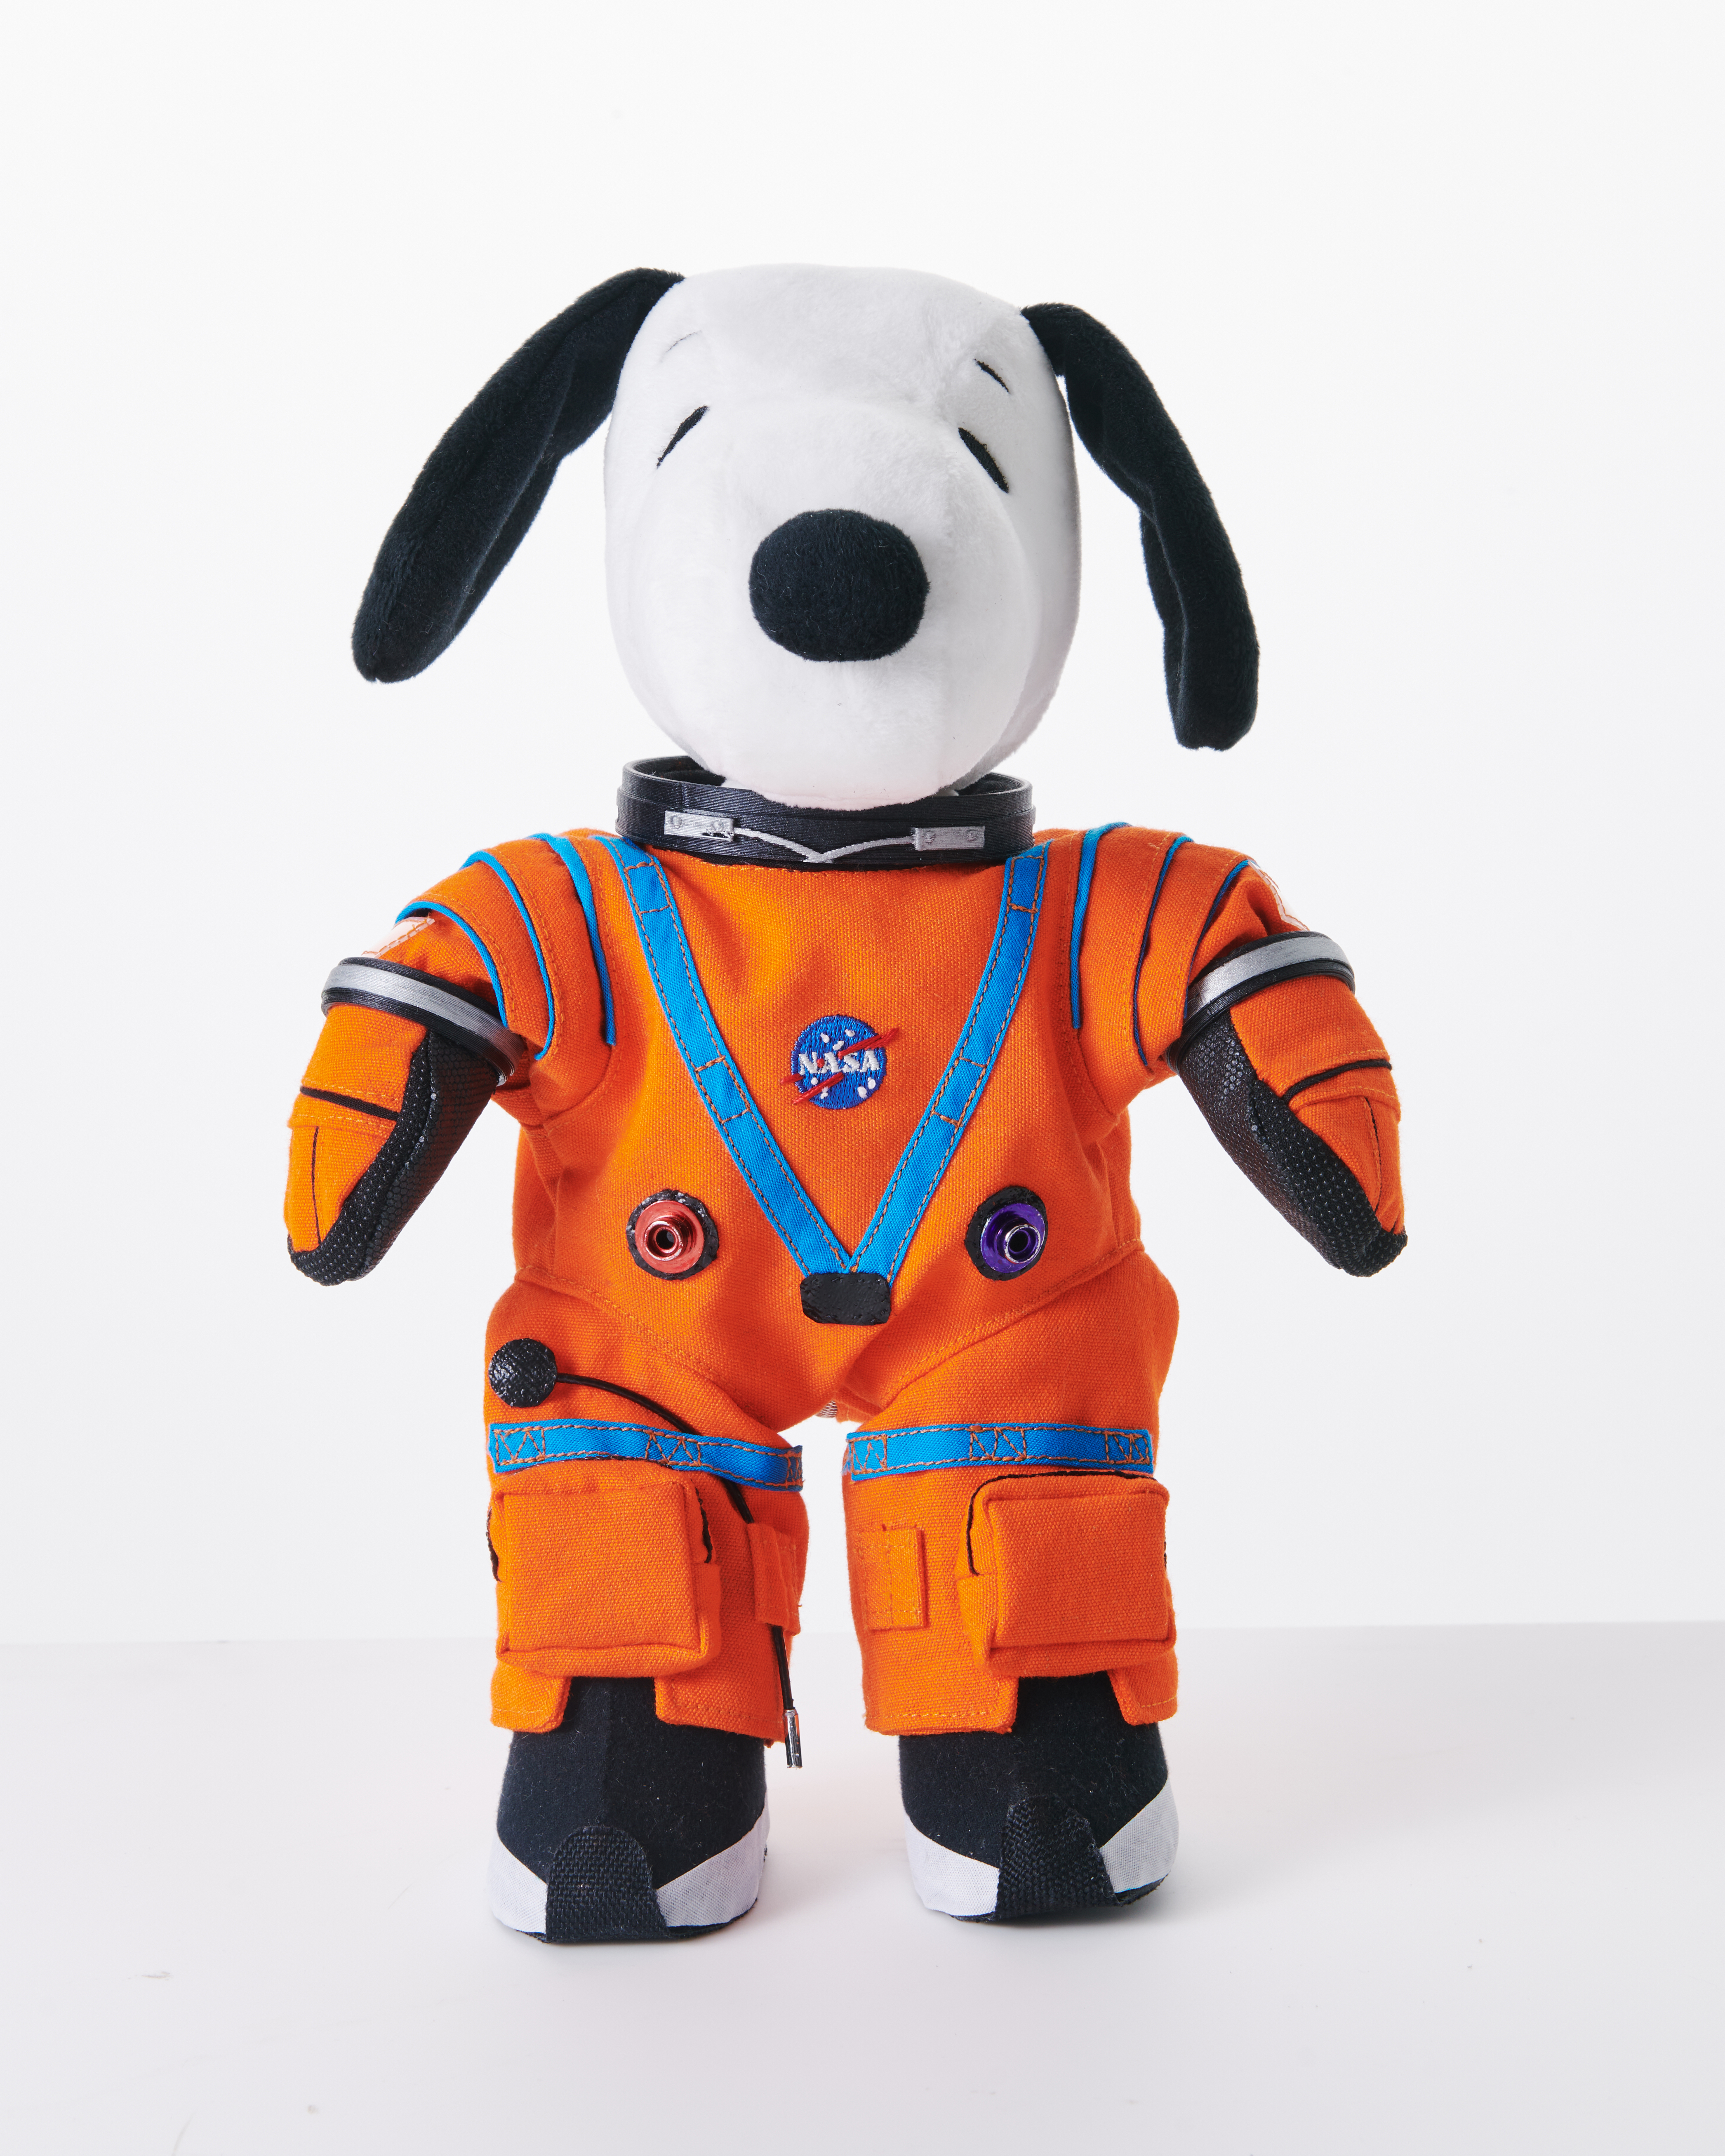 Snoopy to Fly on NASA's Artemis I Moon Mission - NASA